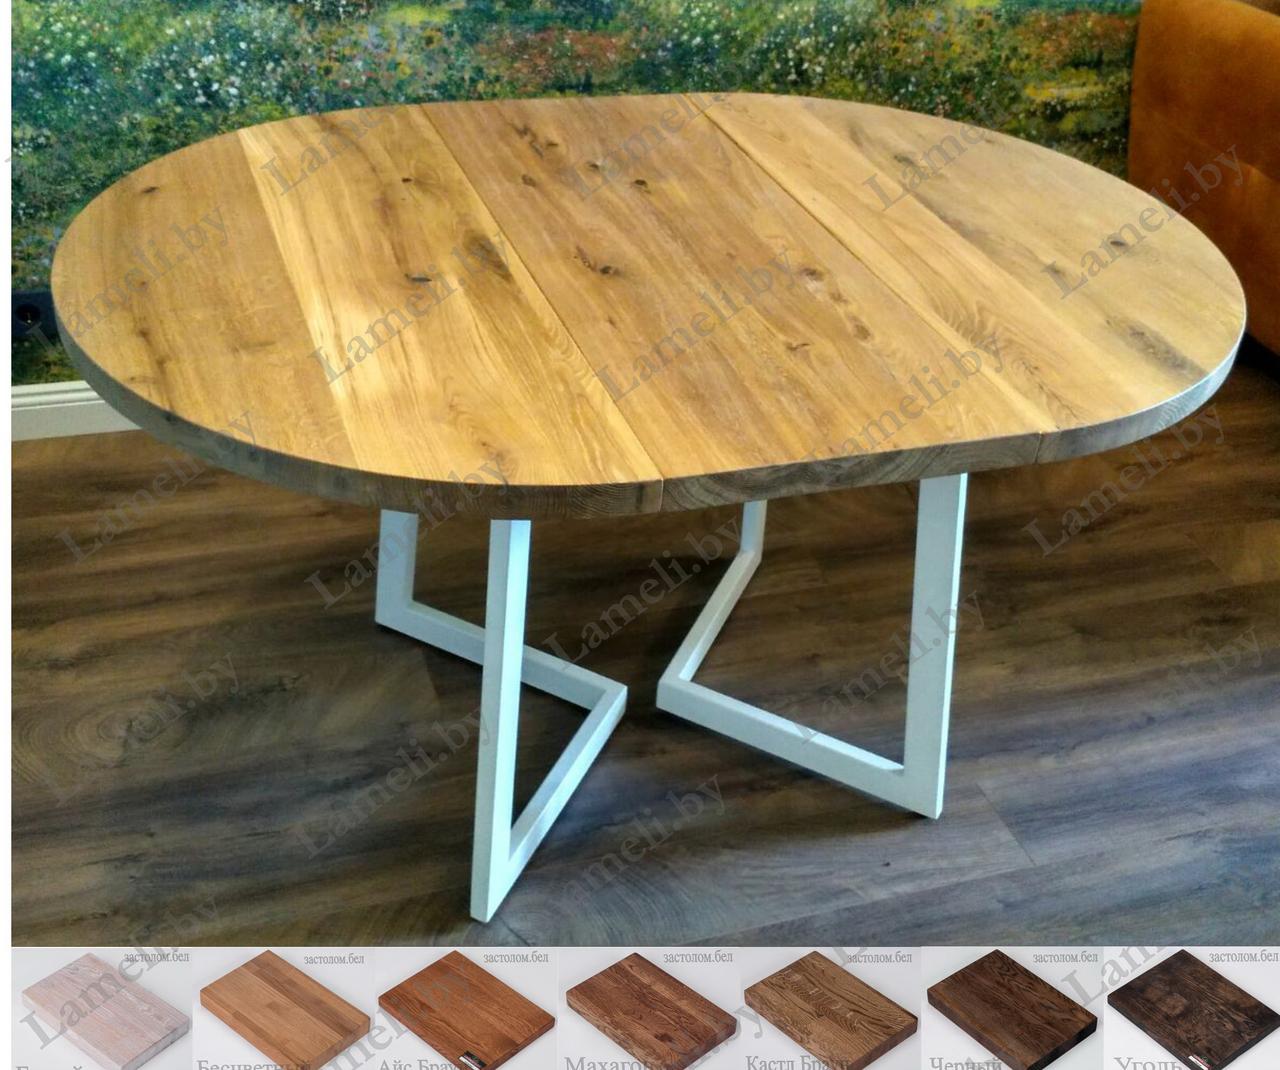 Стол обеденный на металлокаркасе серии "Z" из постформинга, массива дуба или ЛДСП с выбором размера и цвета, фото 1